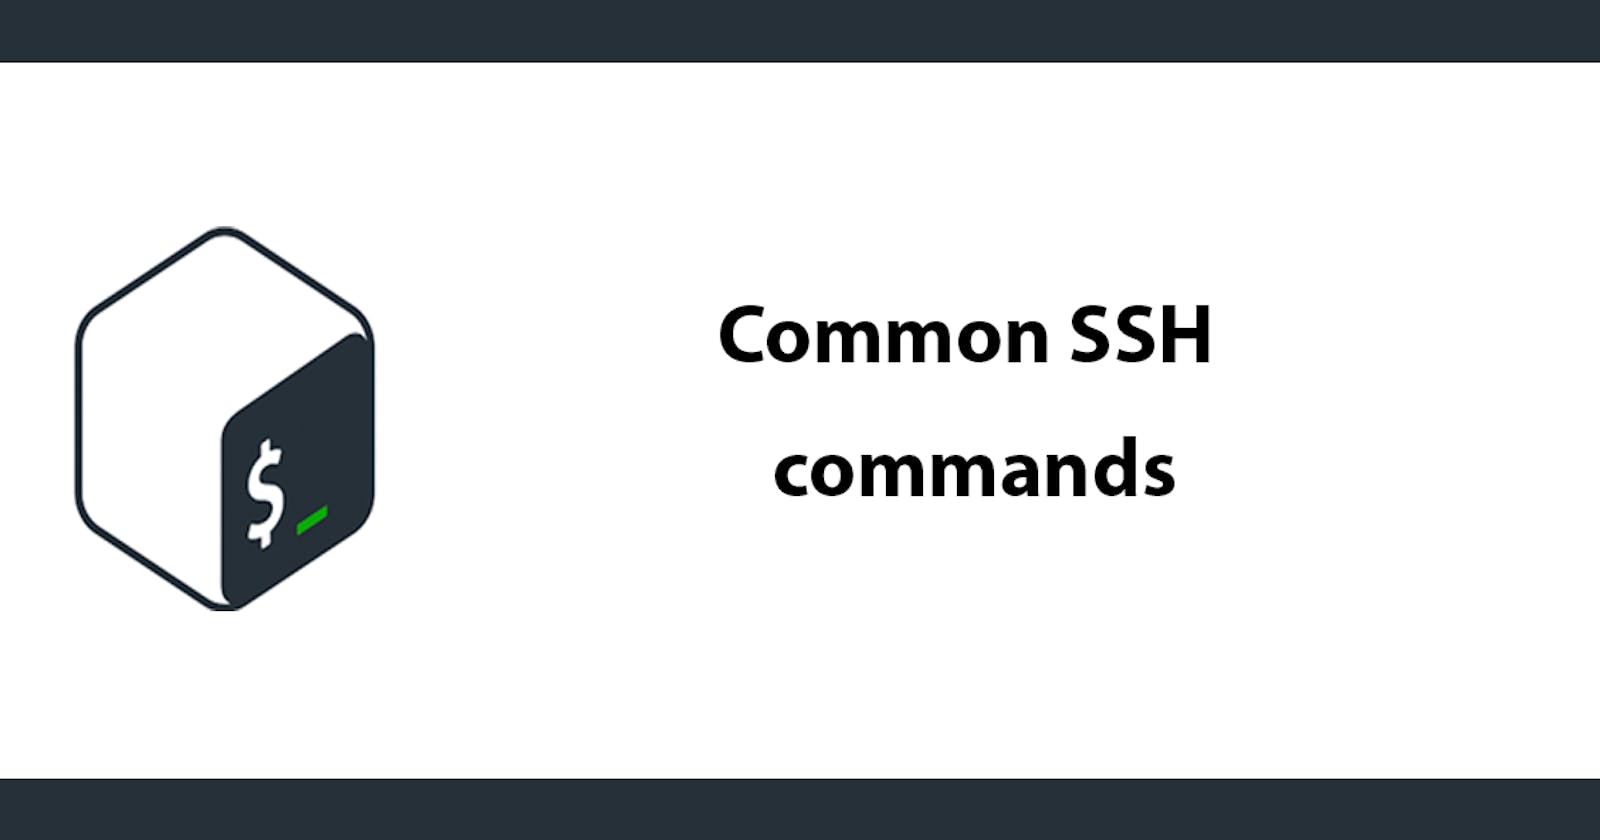 Common SSH commands